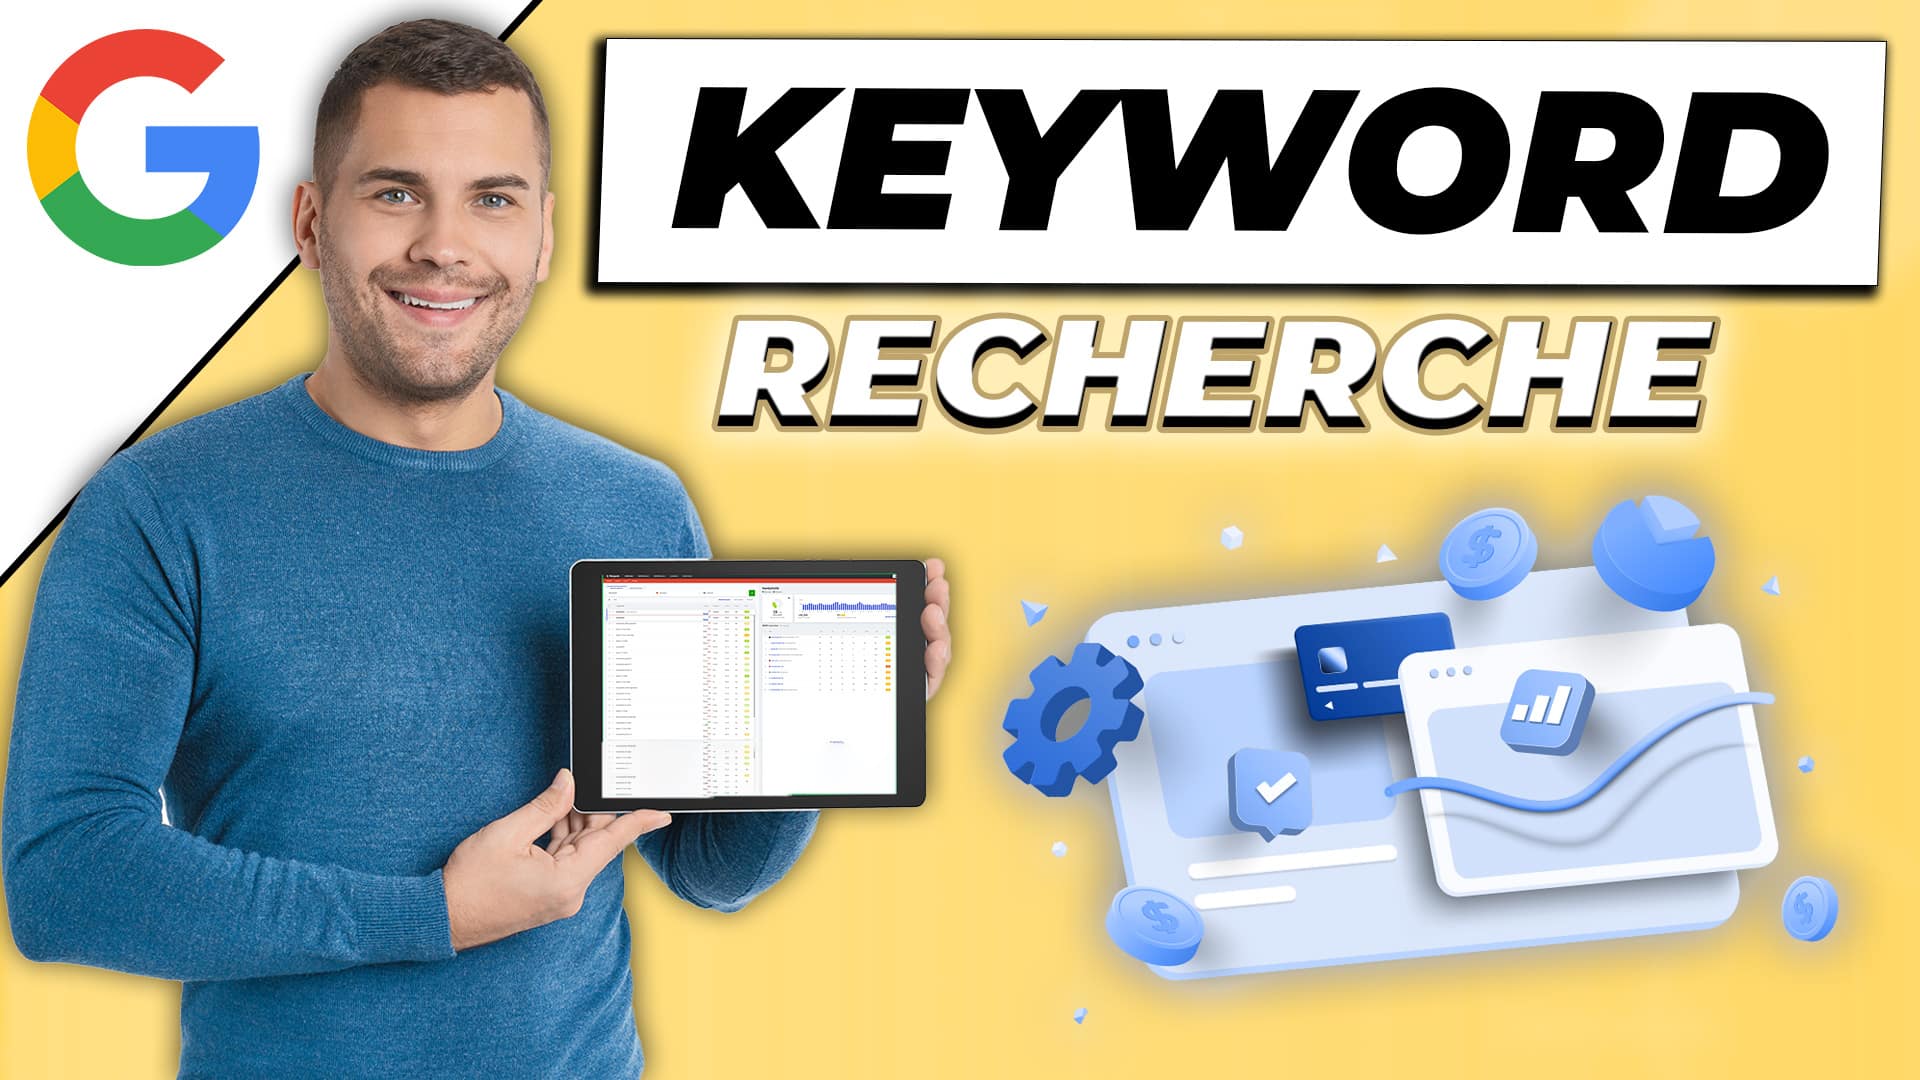 Keyword Recherche für Onlinehändler – SEO Keywords finden